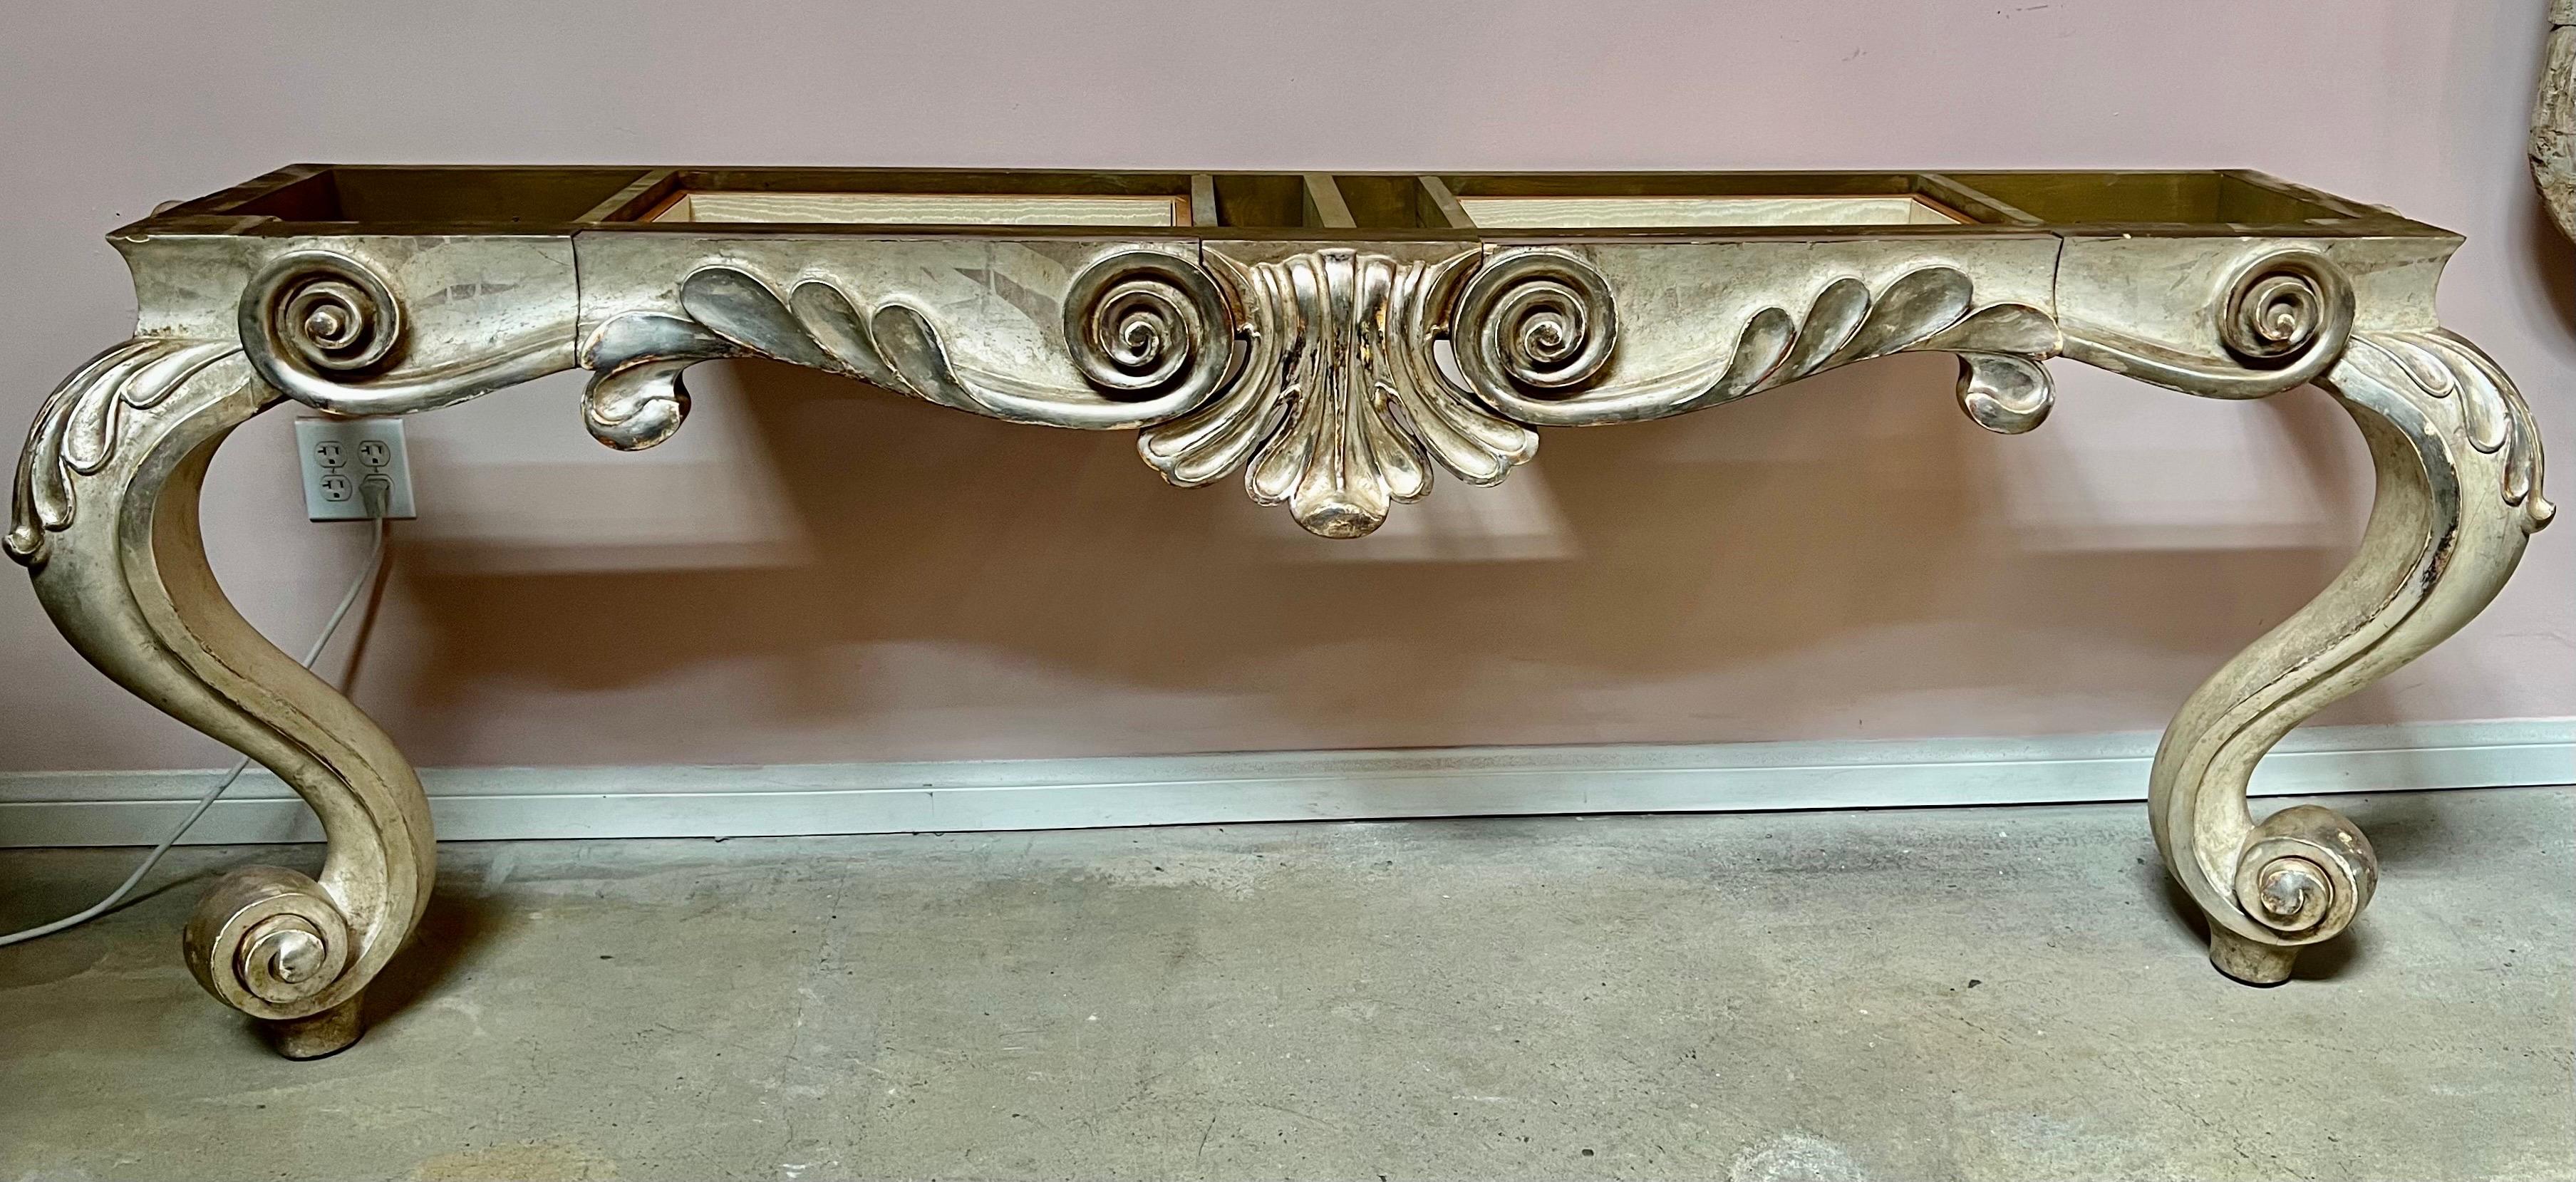 Console monumentale de style Louis XV peinte et dorée à la feuille avec plateau en marbre. La console repose sur deux pieds cabriole qui se terminent par des pieds à volutes. Le tiroir central est utilisé comme rangement. Plateau en marbre crème